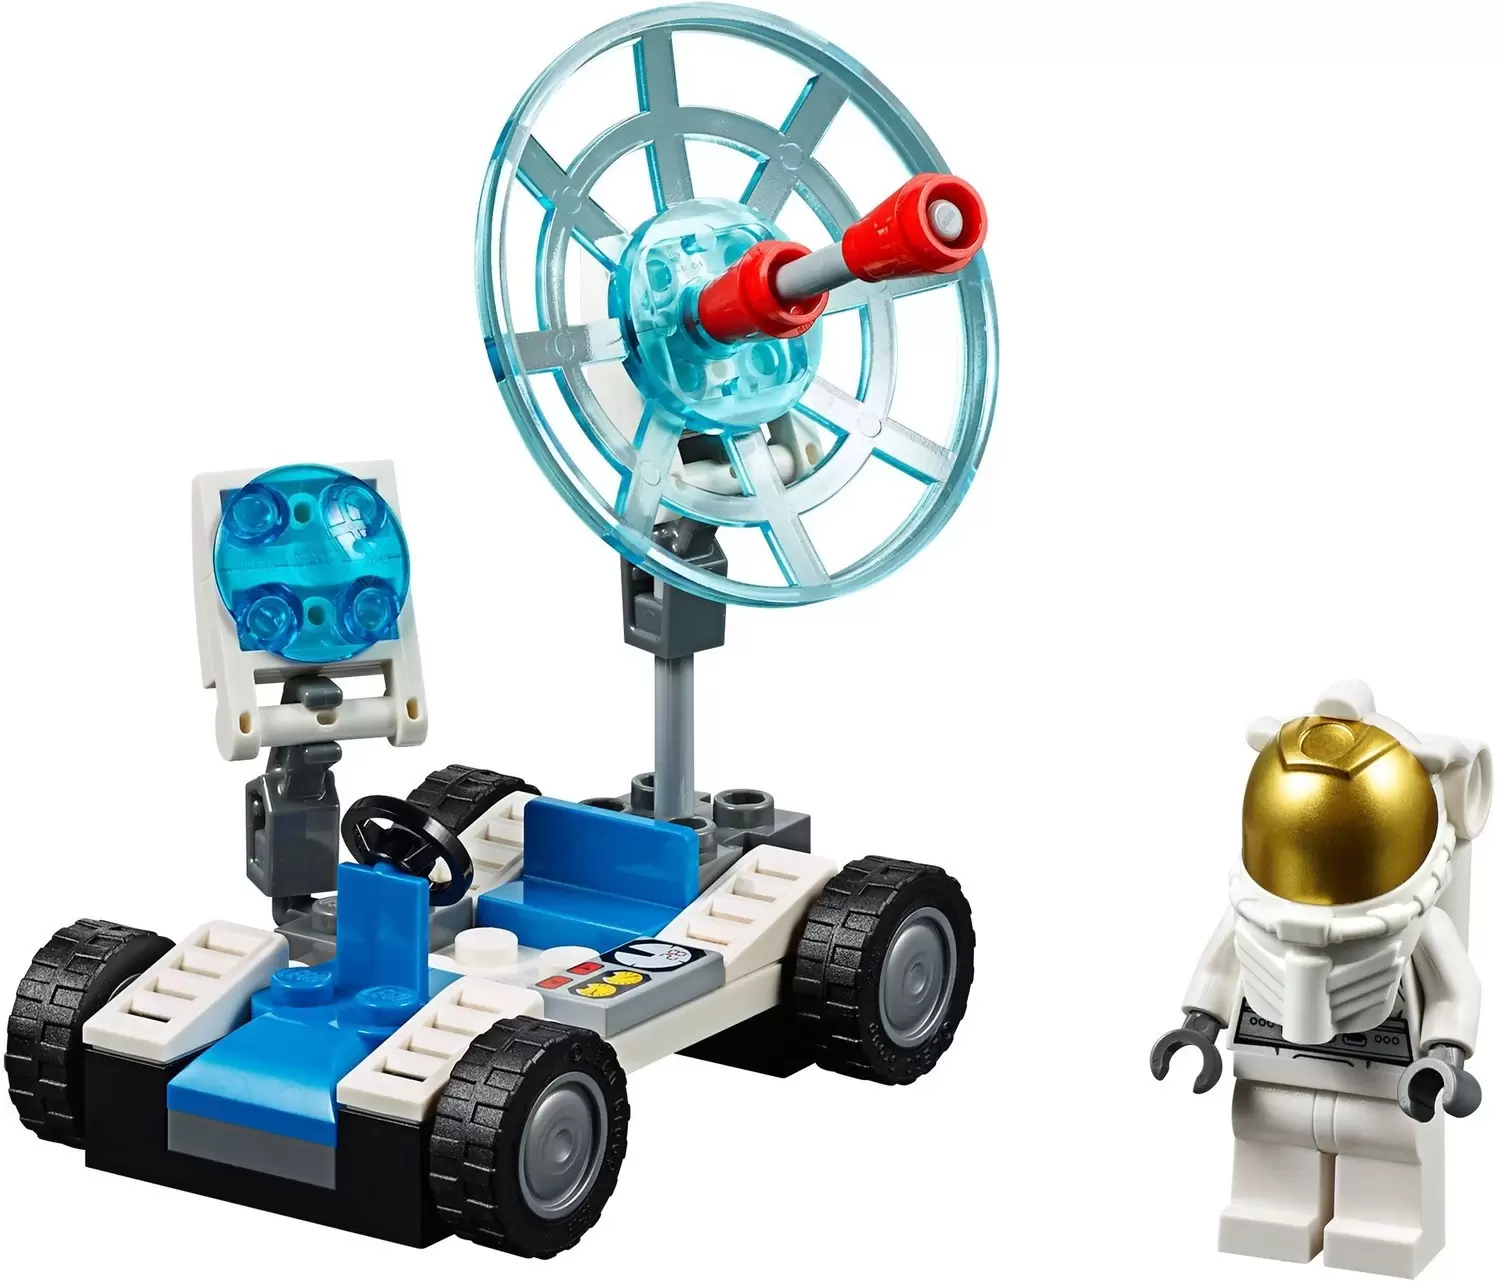 LEGO CITY - Space Utility Vehicle